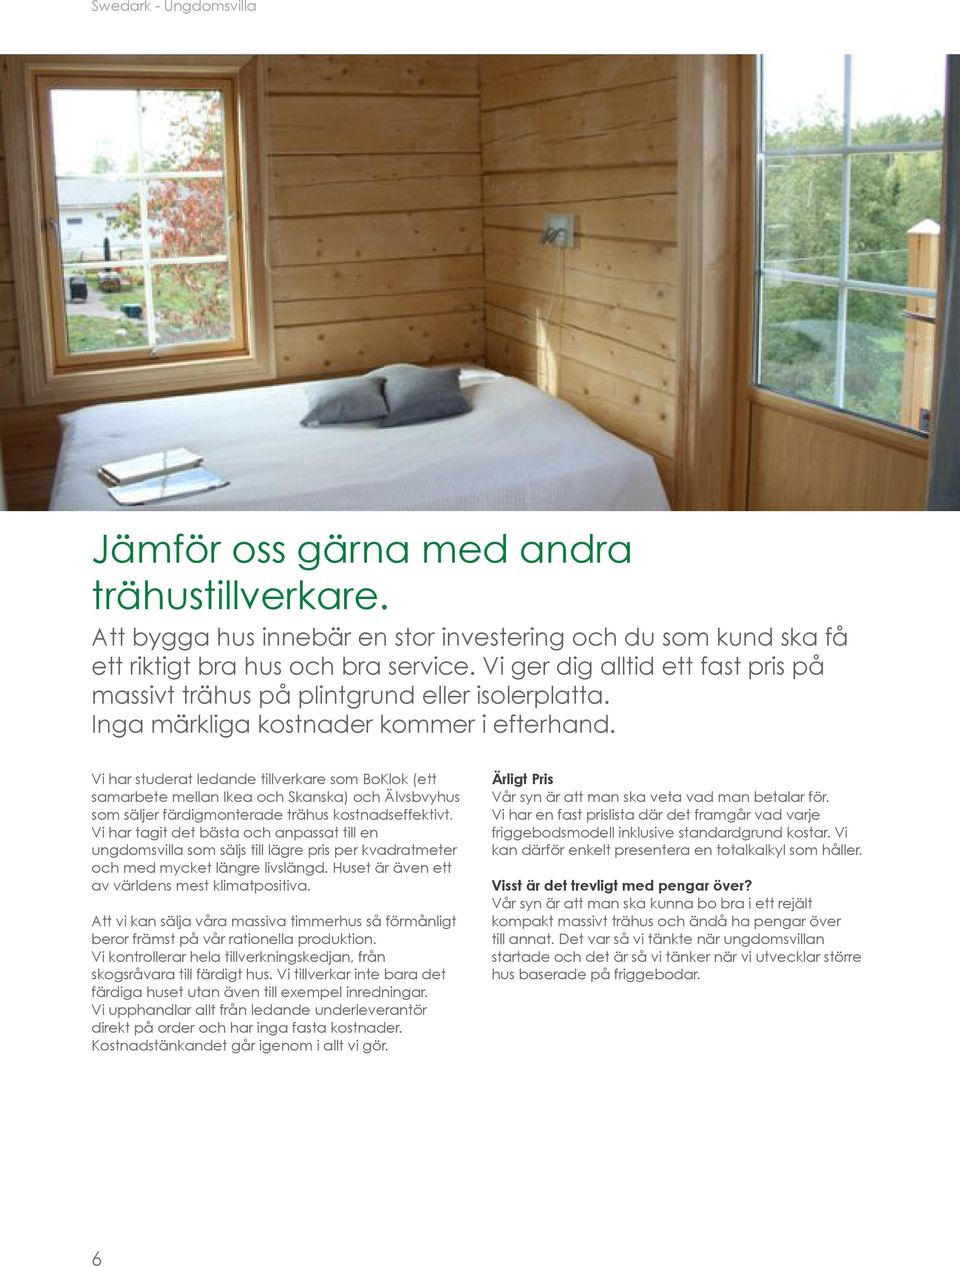 Vi har studerat ledande tillverkare som BoKlok (ett samarbete mellan Ikea och Skanska) och Älvsbvyhus som säljer färdigmonterade trähus kostnadseffektivt.